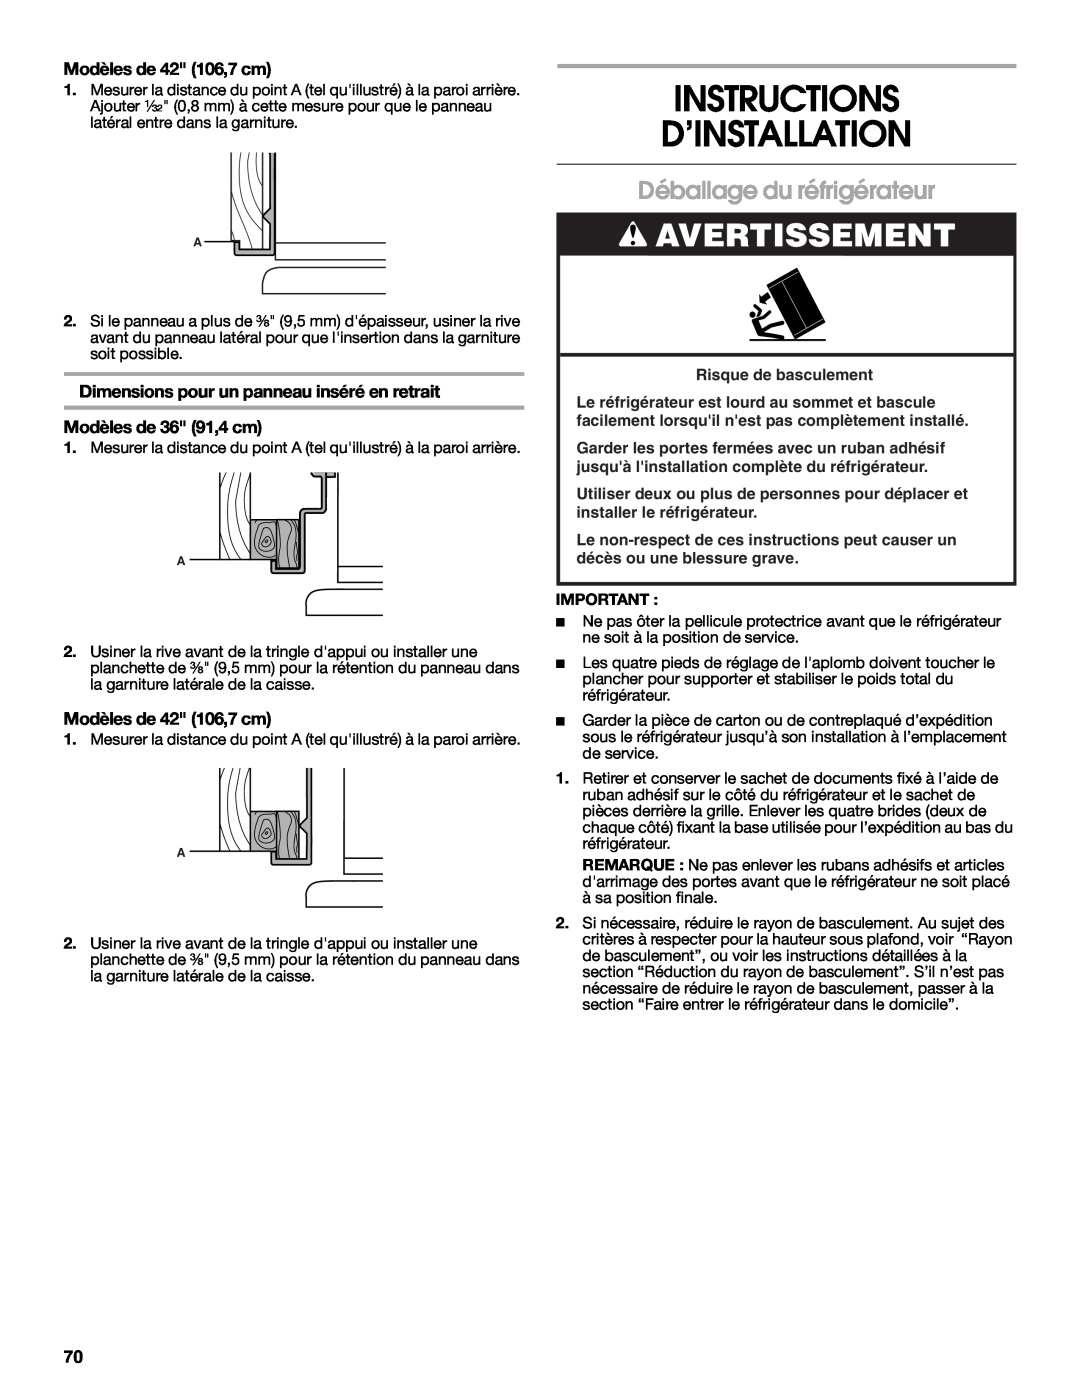 Jenn-Air W10183782A manual Instructions D’Installation, Déballage du réfrigérateur, Avertissement, Modèles de 42 106,7 cm 